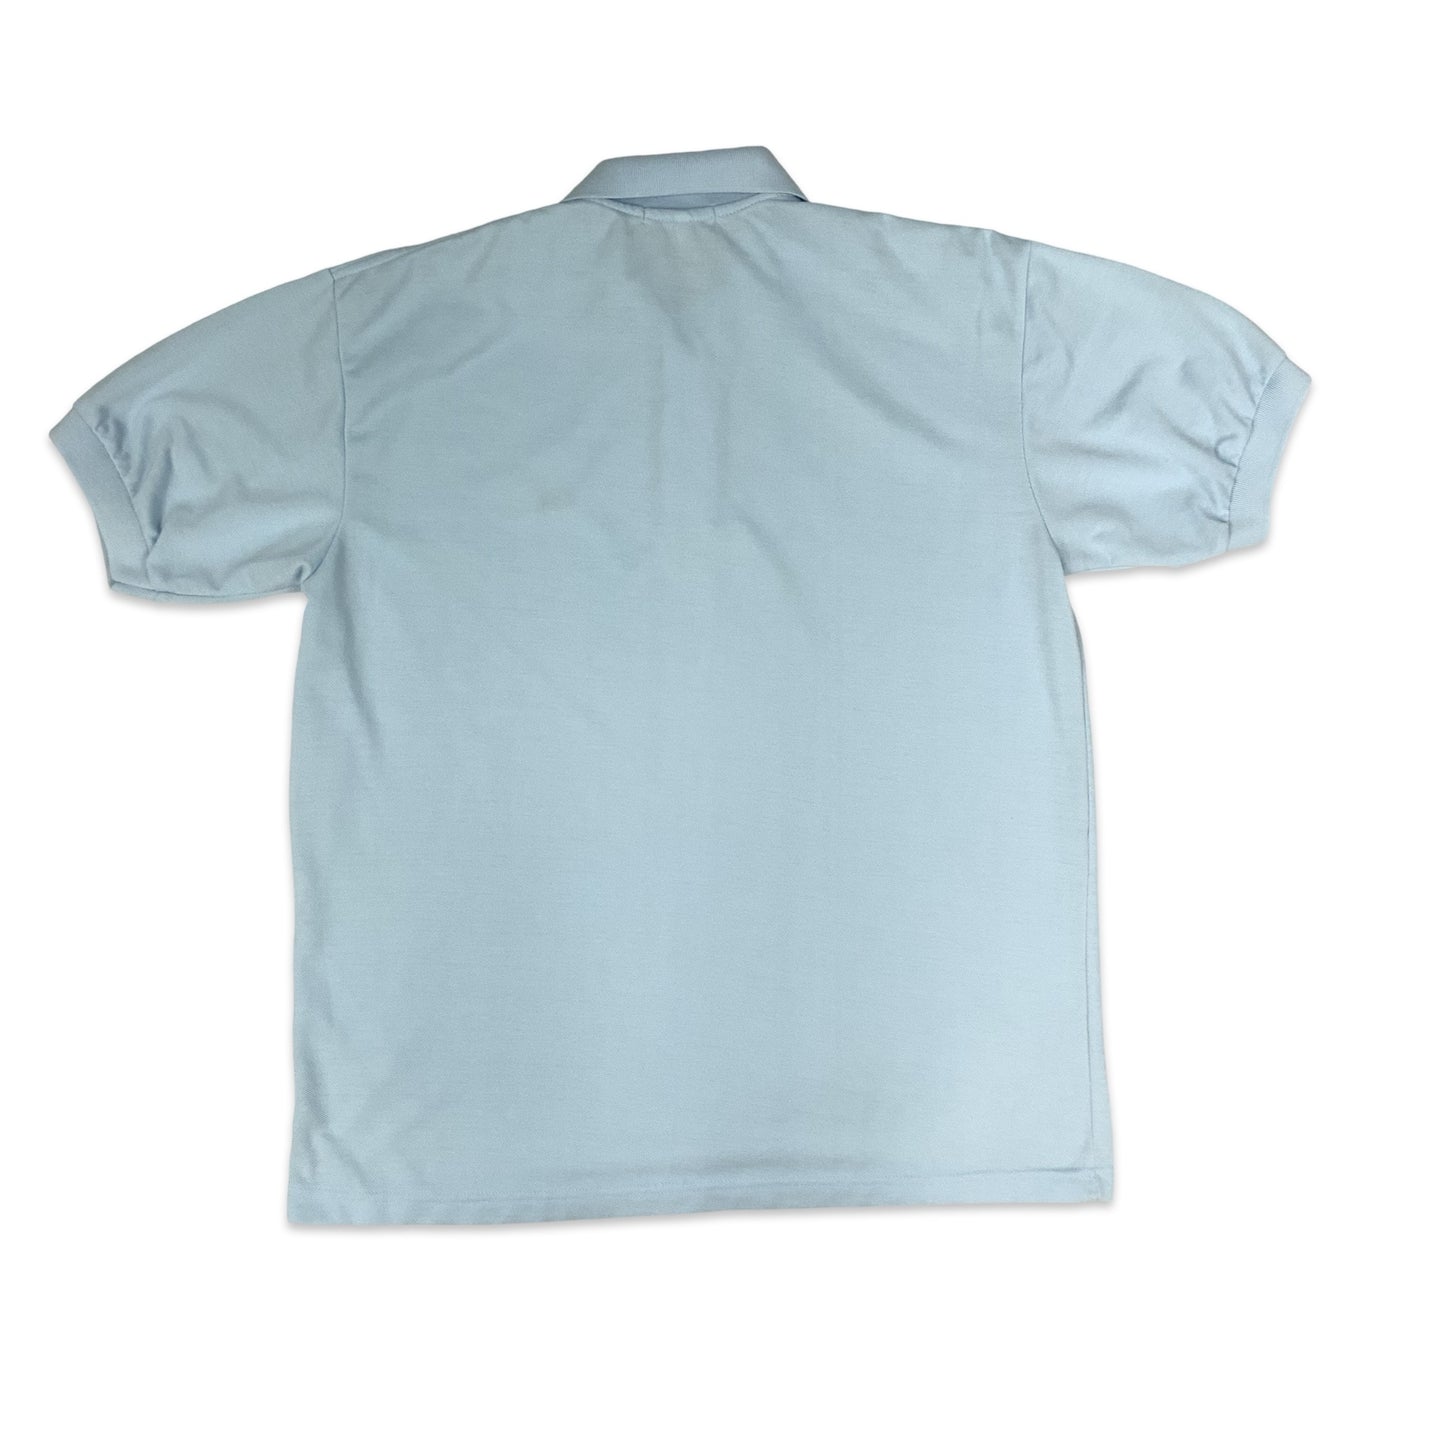 Vintage 80s Chemise Lacoste Light Blue Polo Shirt L XL